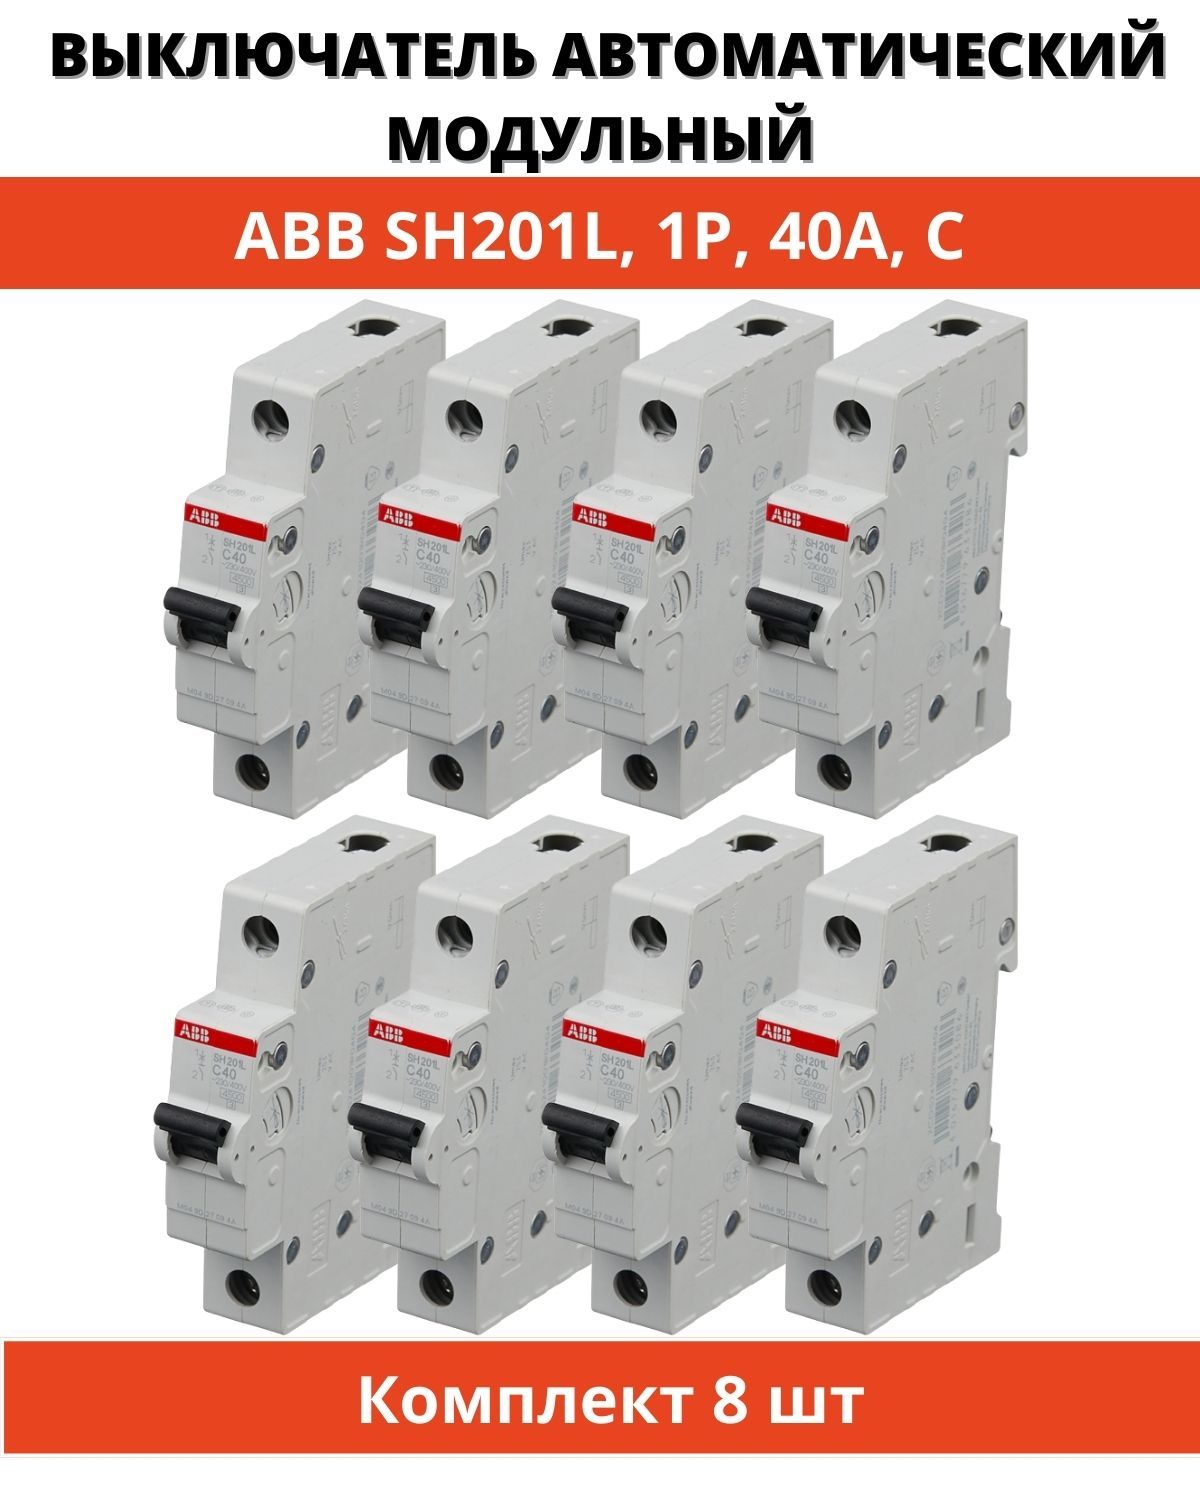 Автоматический выключатель abb sh201l. ABB sh201. Выключатель АВВ. Переключатель АВВ. Sh201l.